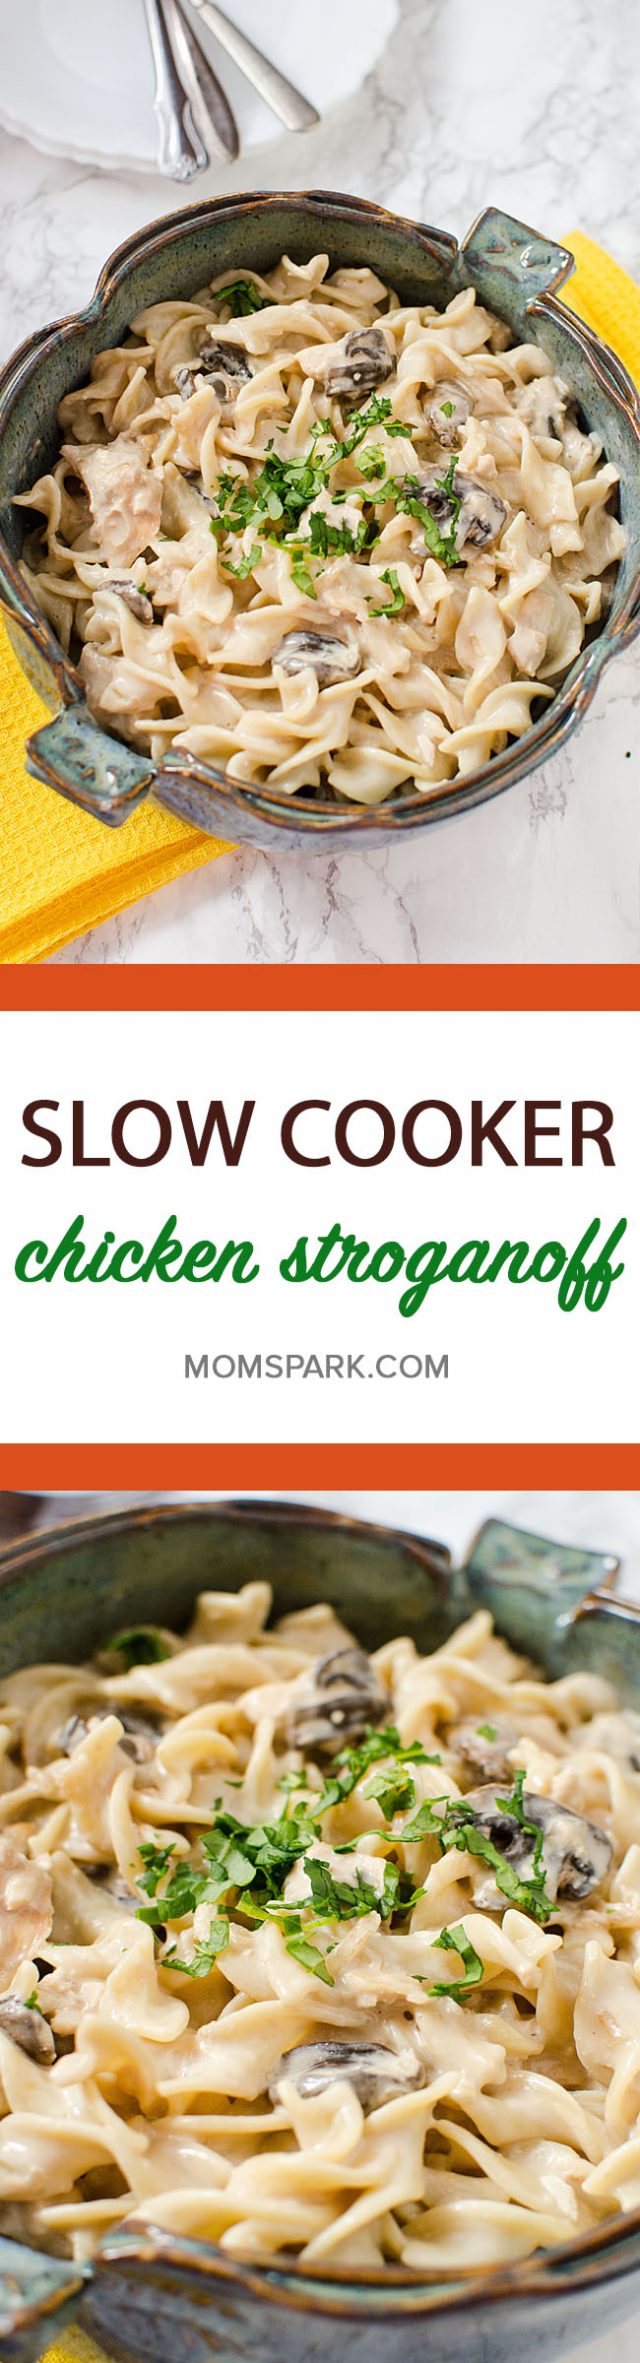 Easy Crockpot Slow Cooker Chicken & Mushroom Stroganoff Recipe